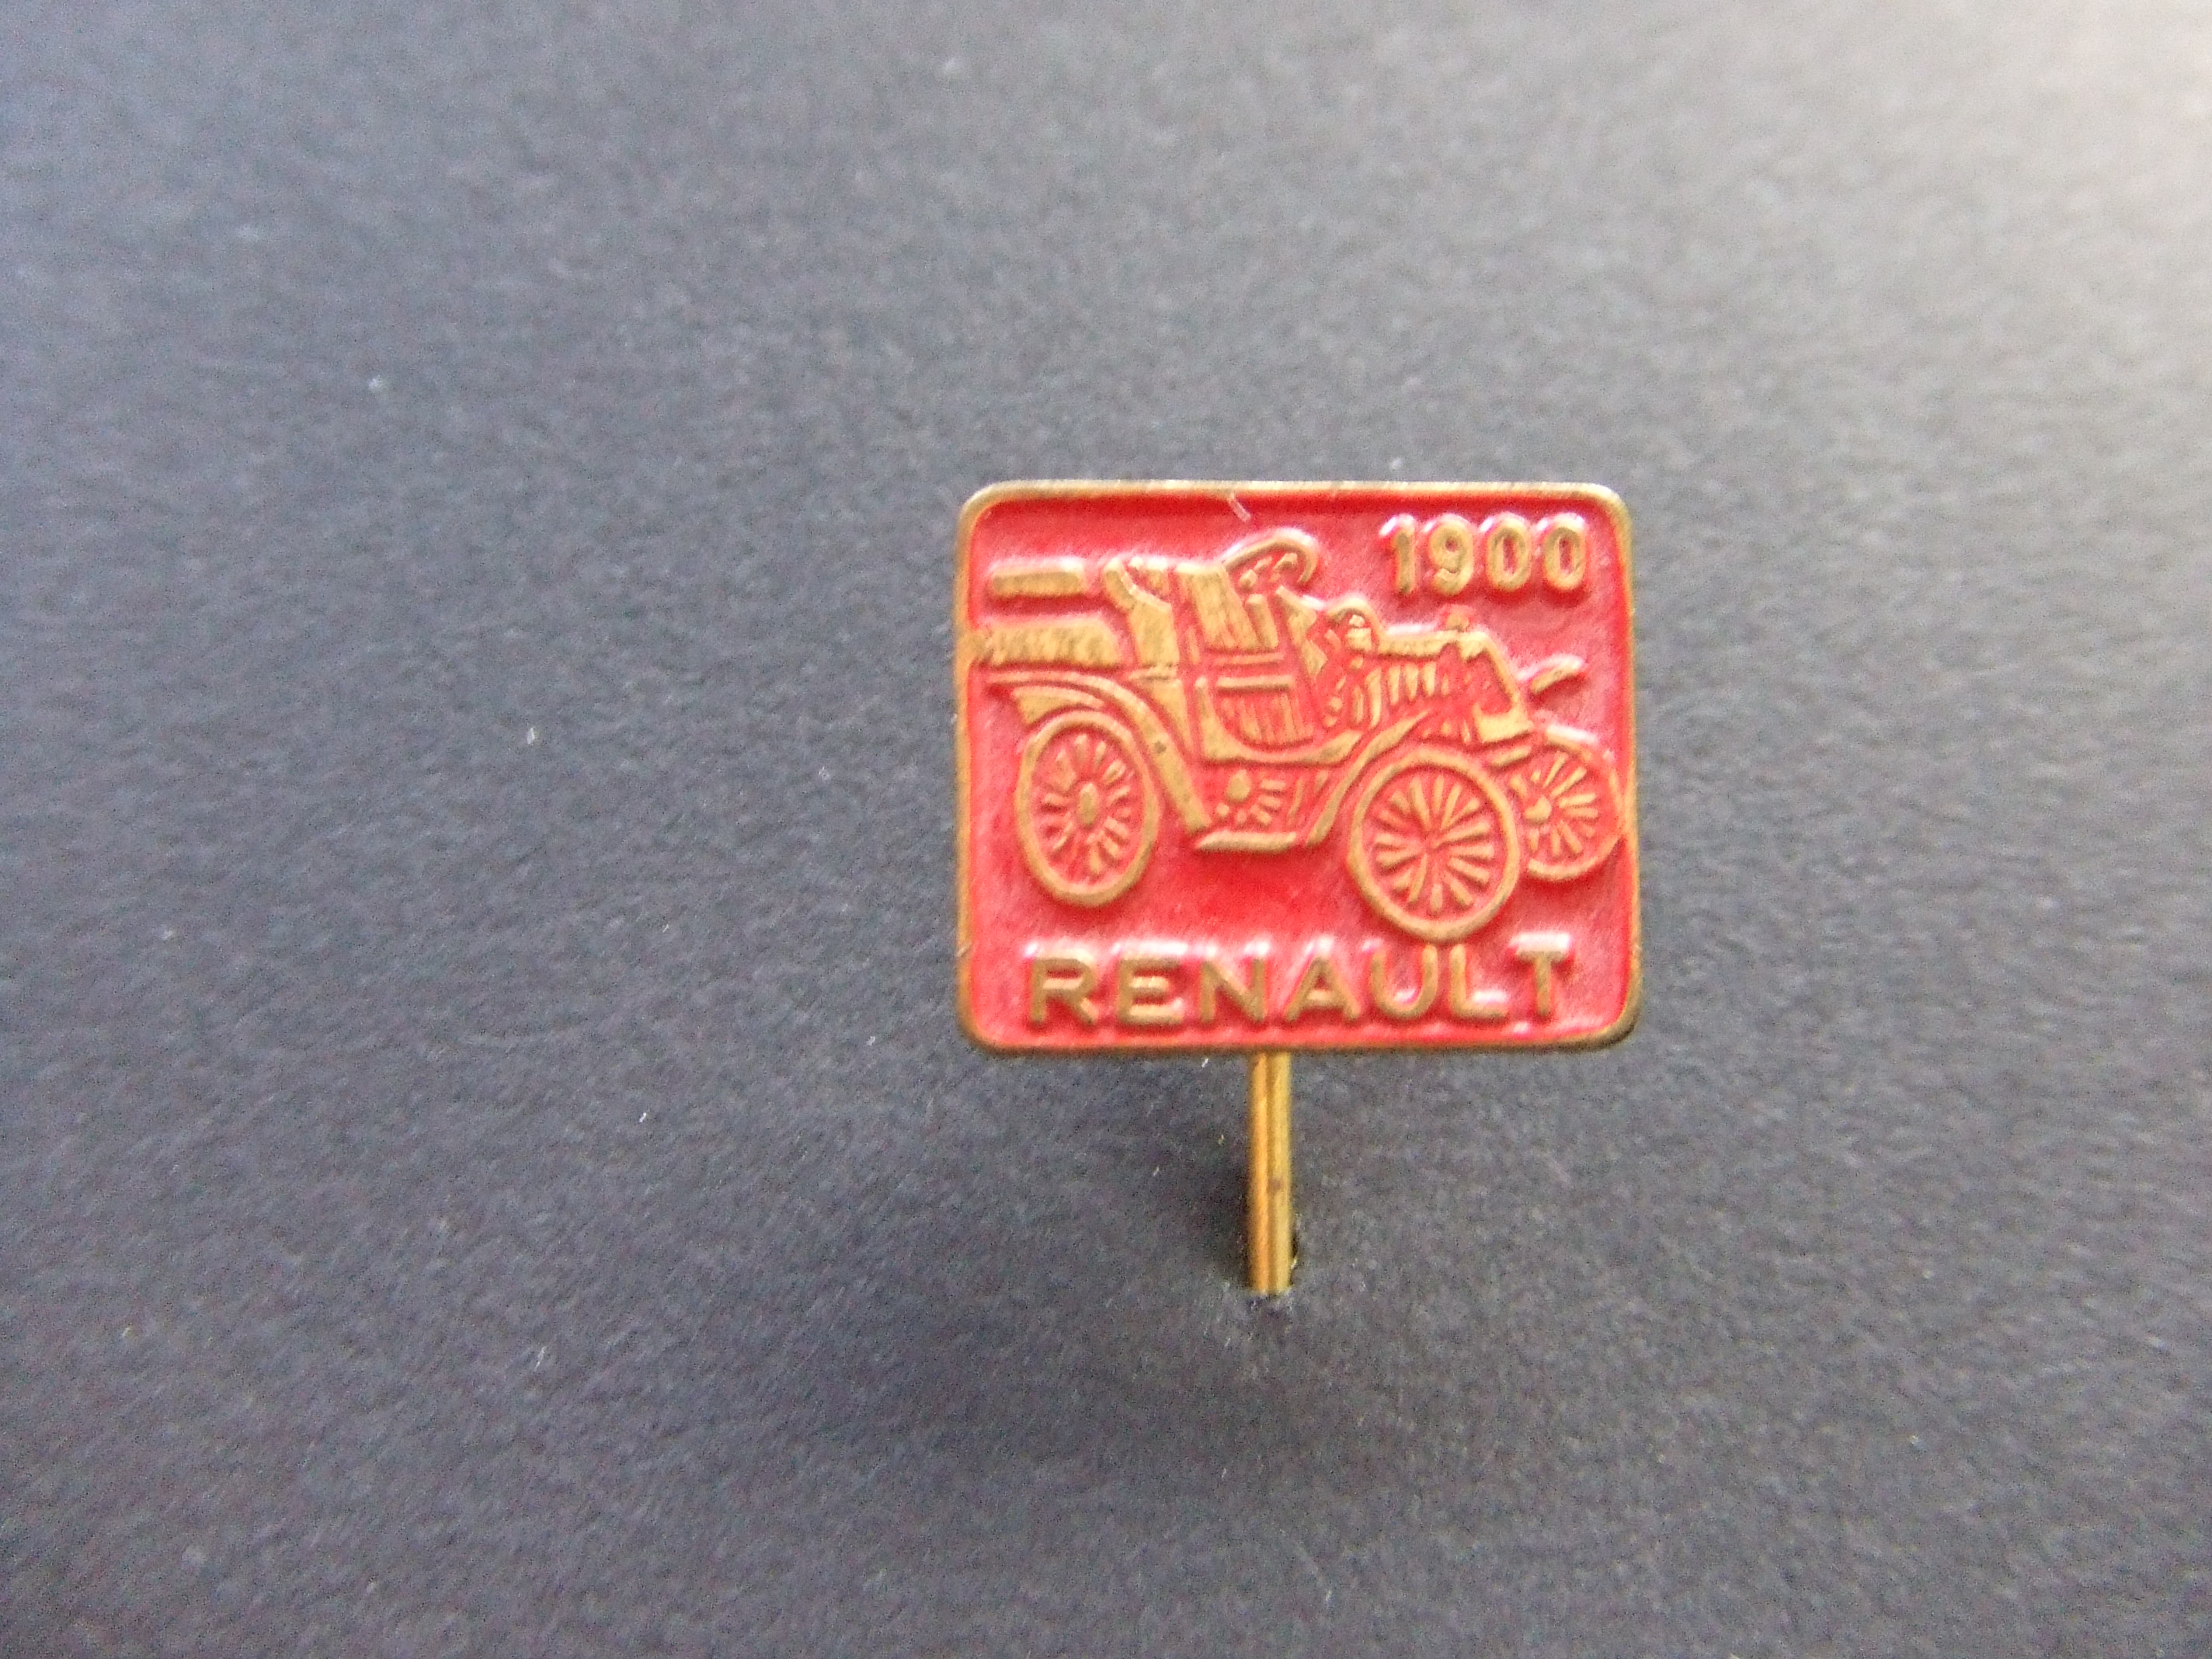 Renault 1900 rood oldtimer